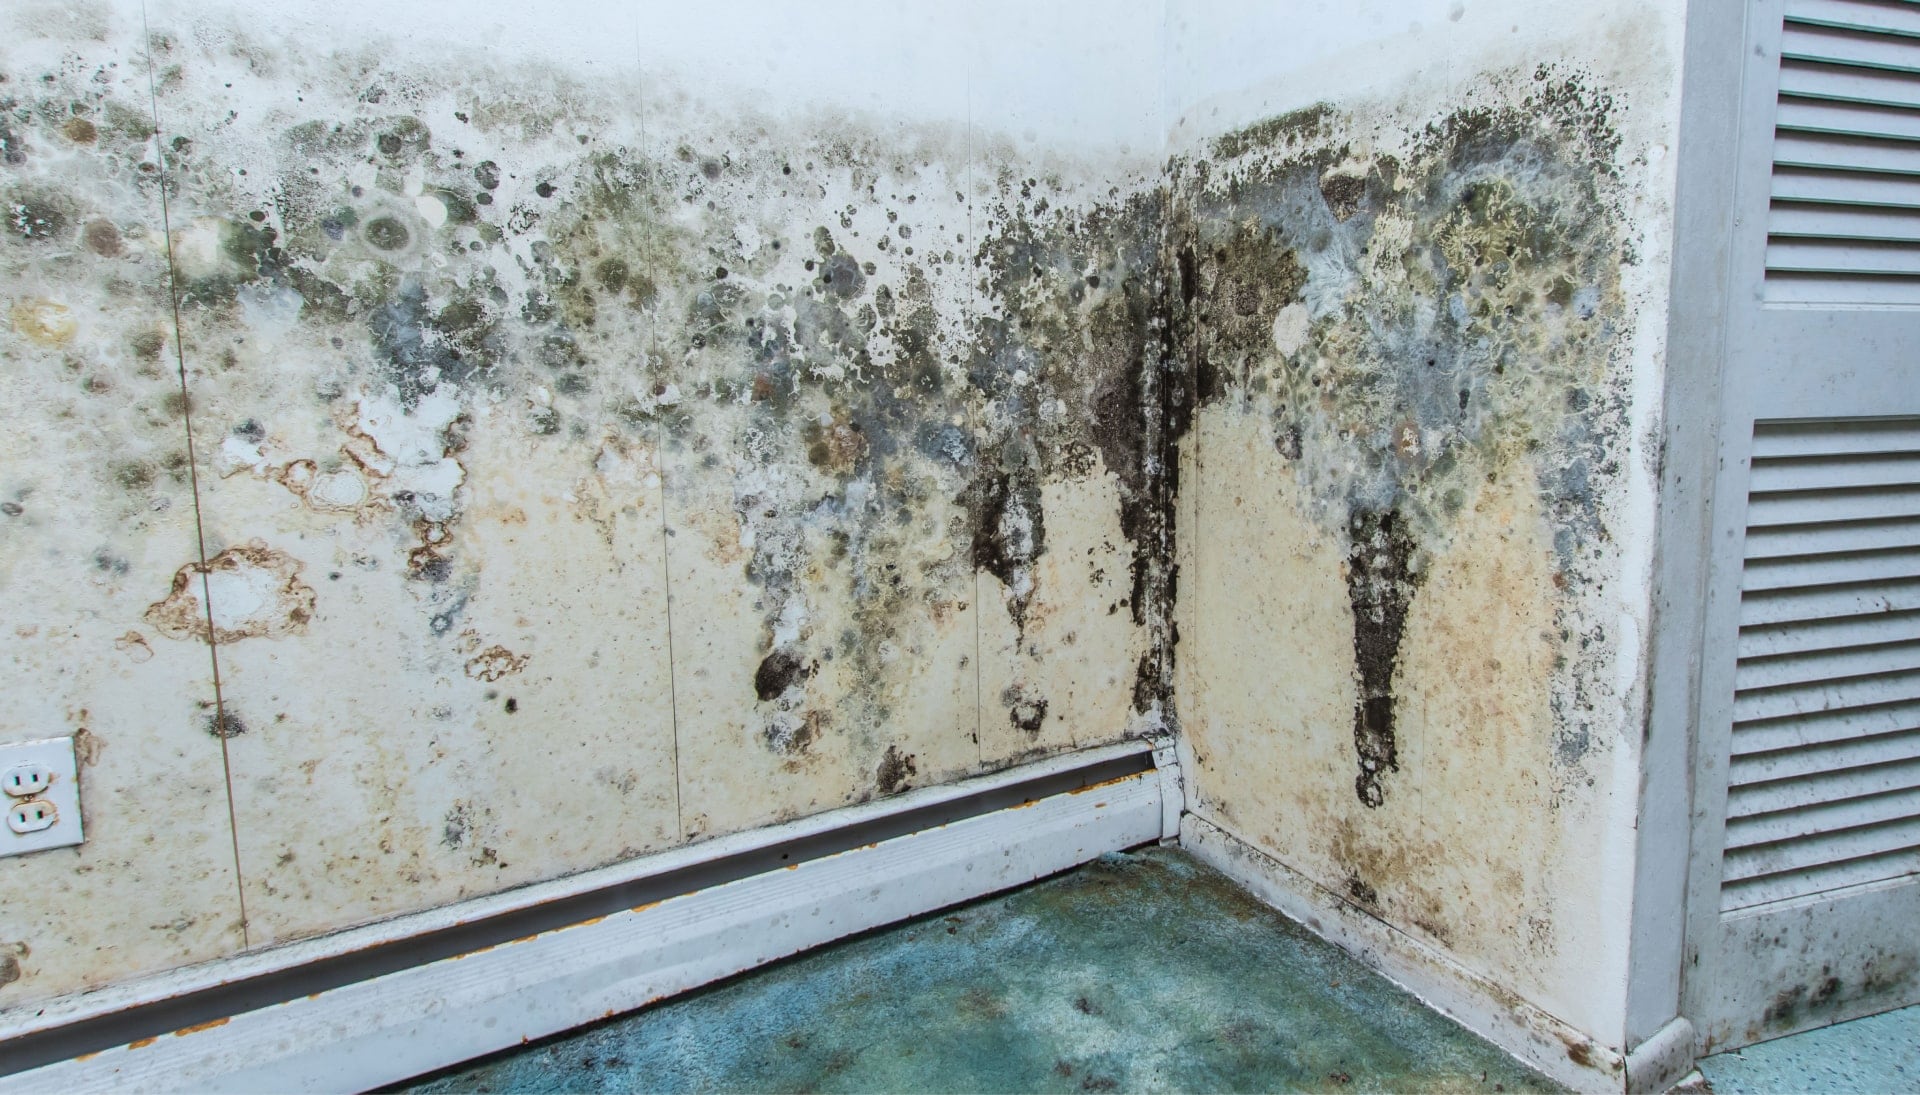 Mold-Damager-Odor-Control in Colorado Springs